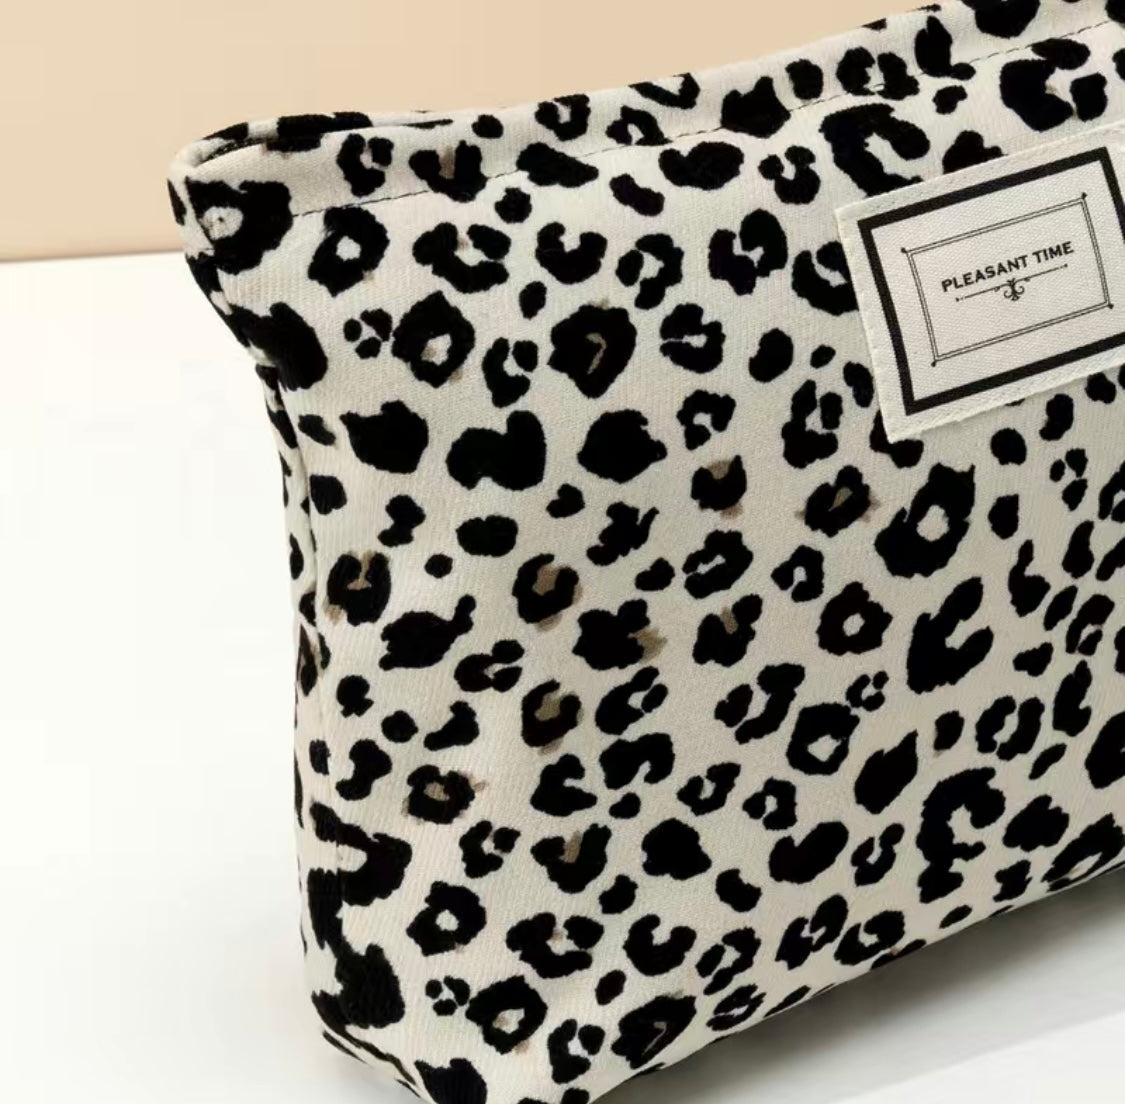 White Leopard Zip Top Cosmetics Bag